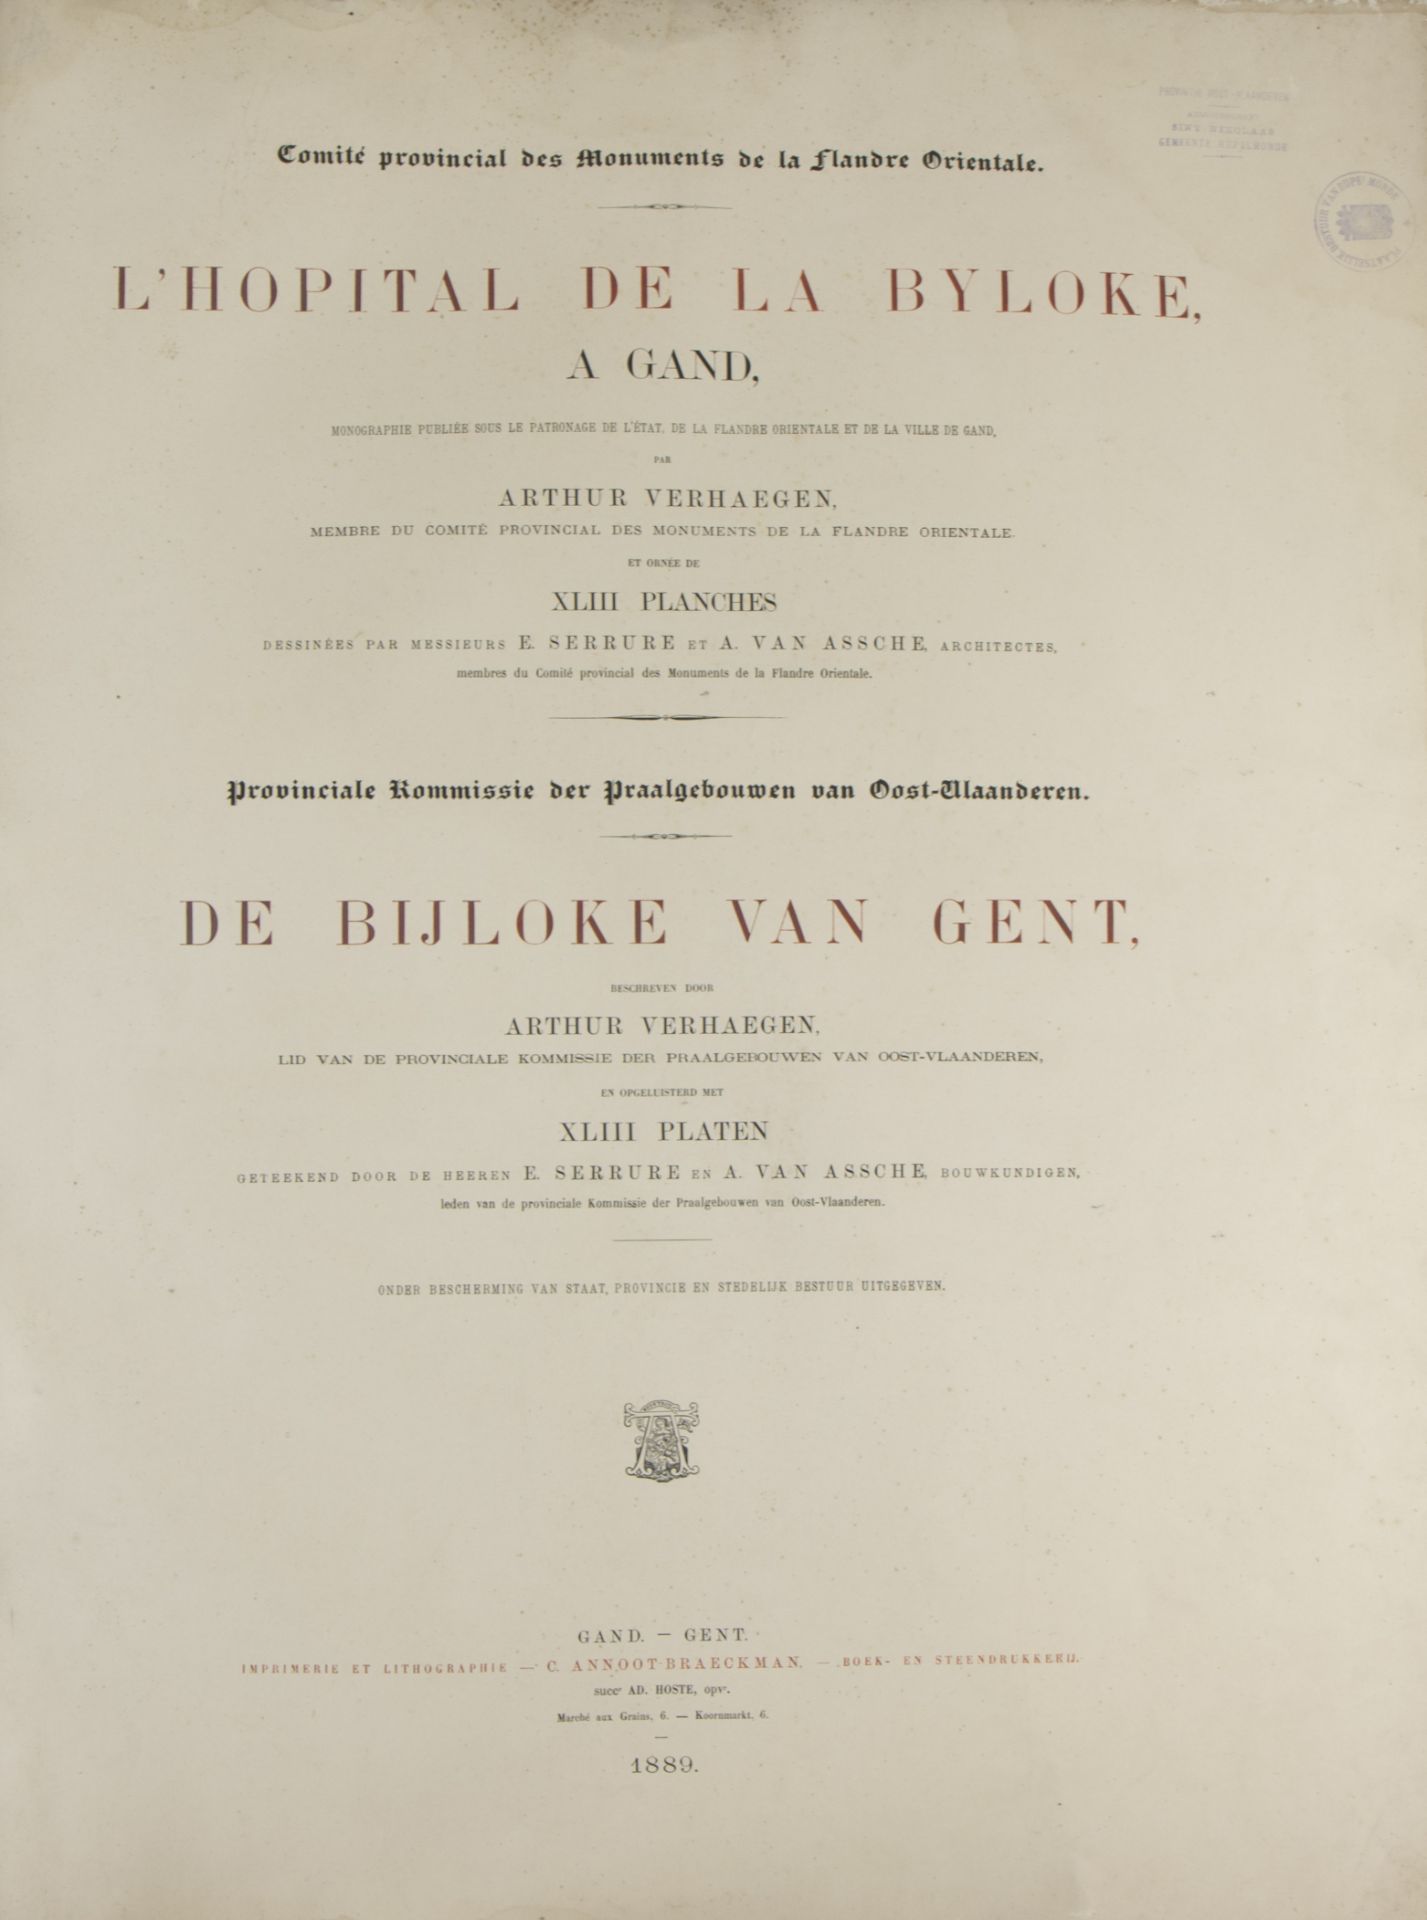 L'Hopital de la Byloke by Arthur Verhaegen 1889, 43 plates